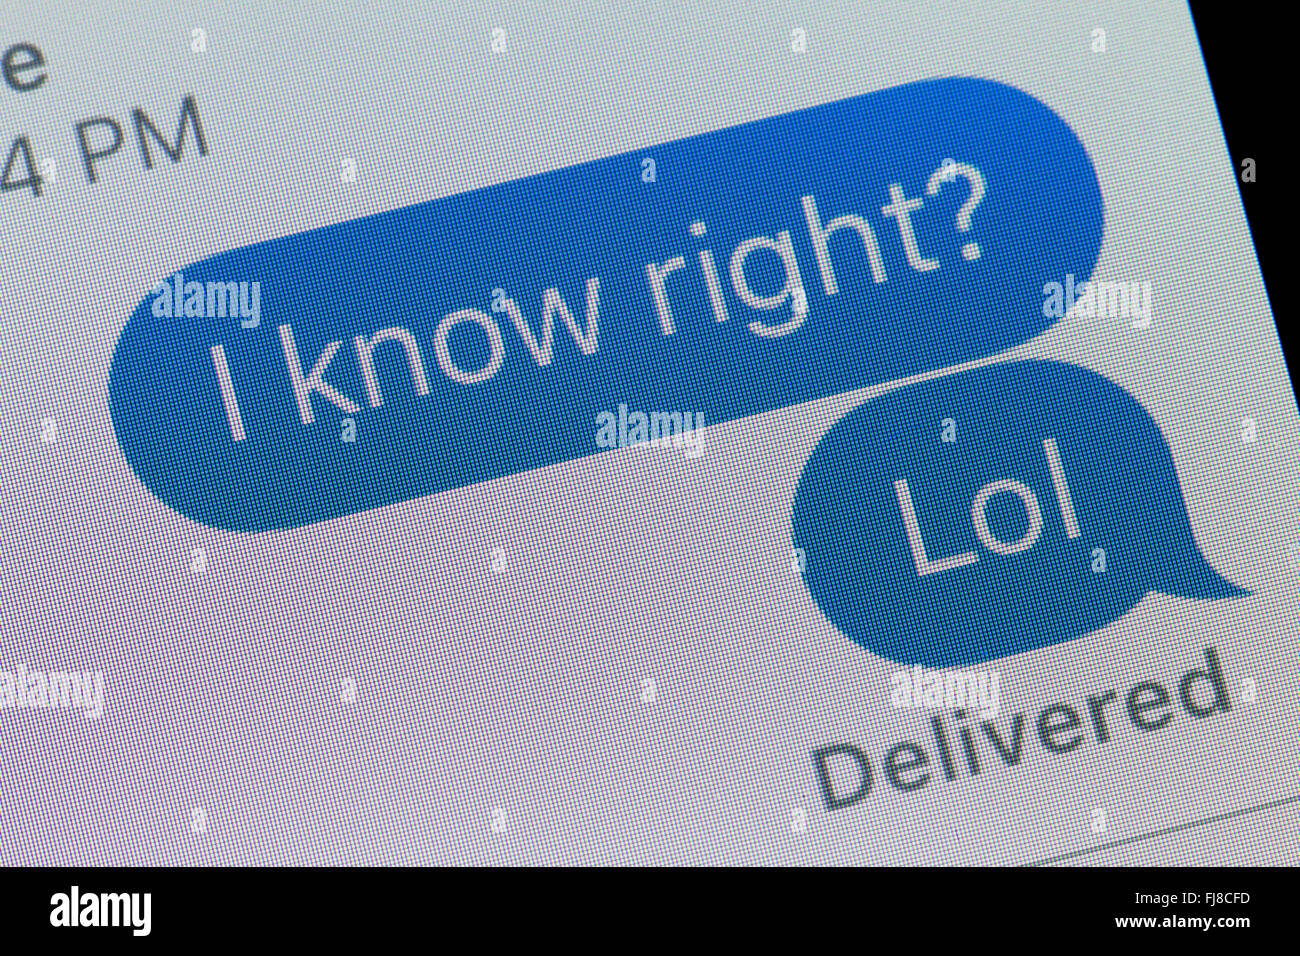 Un message sur l'écran de l'iPhone (LOL message texte SMS, l'argot commun) - USA Banque D'Images